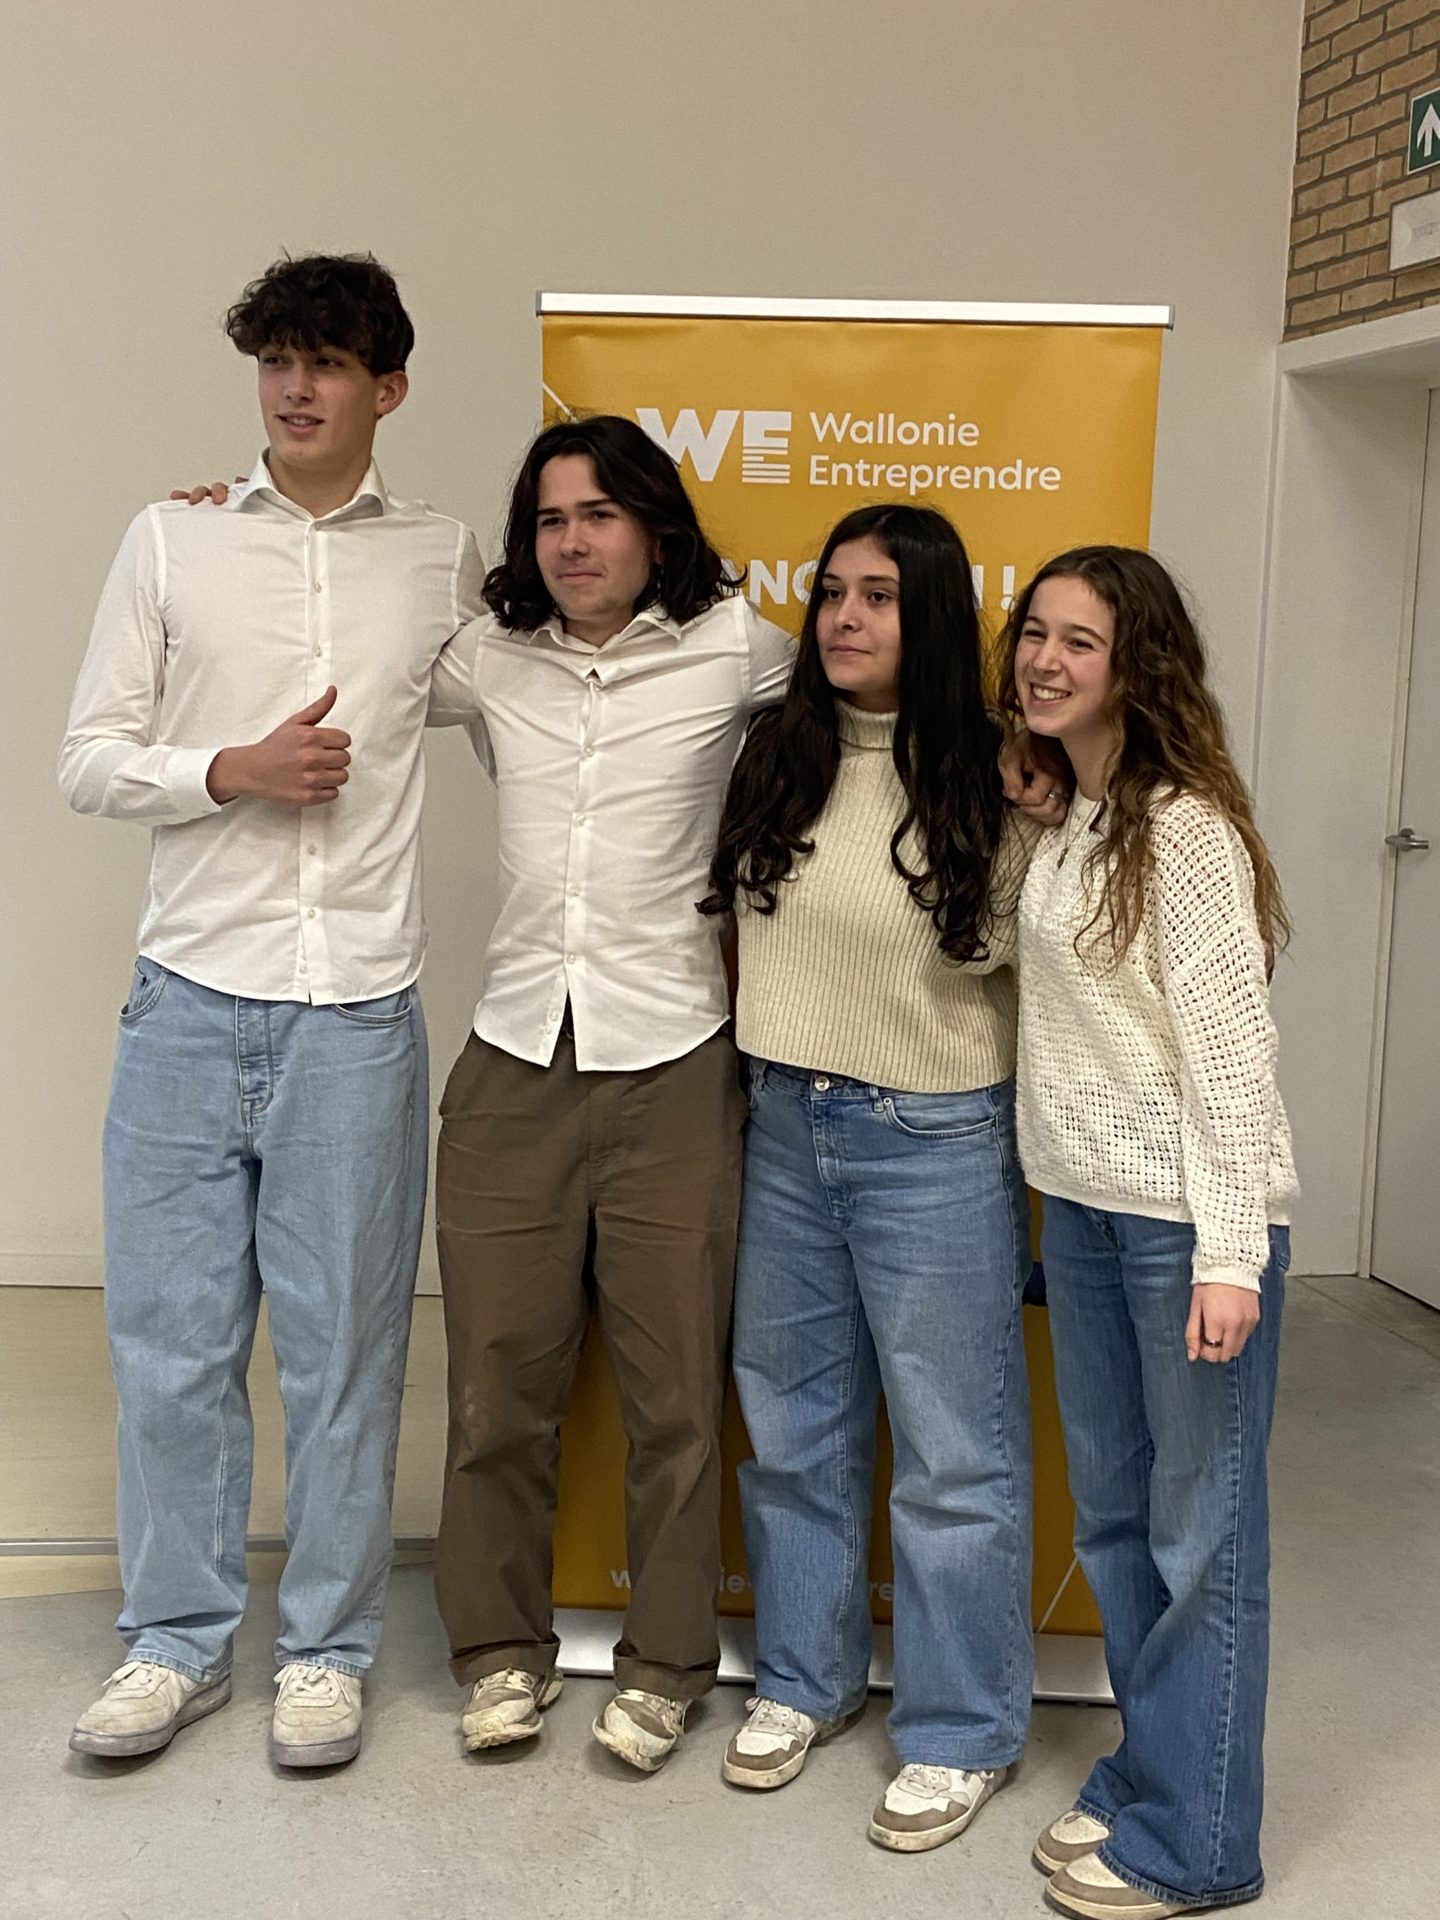 Quatre élèves posent devant un panneau roll-up de "Wallonie Entreprendre". Celui à gauche de la photo a son pouce levé.